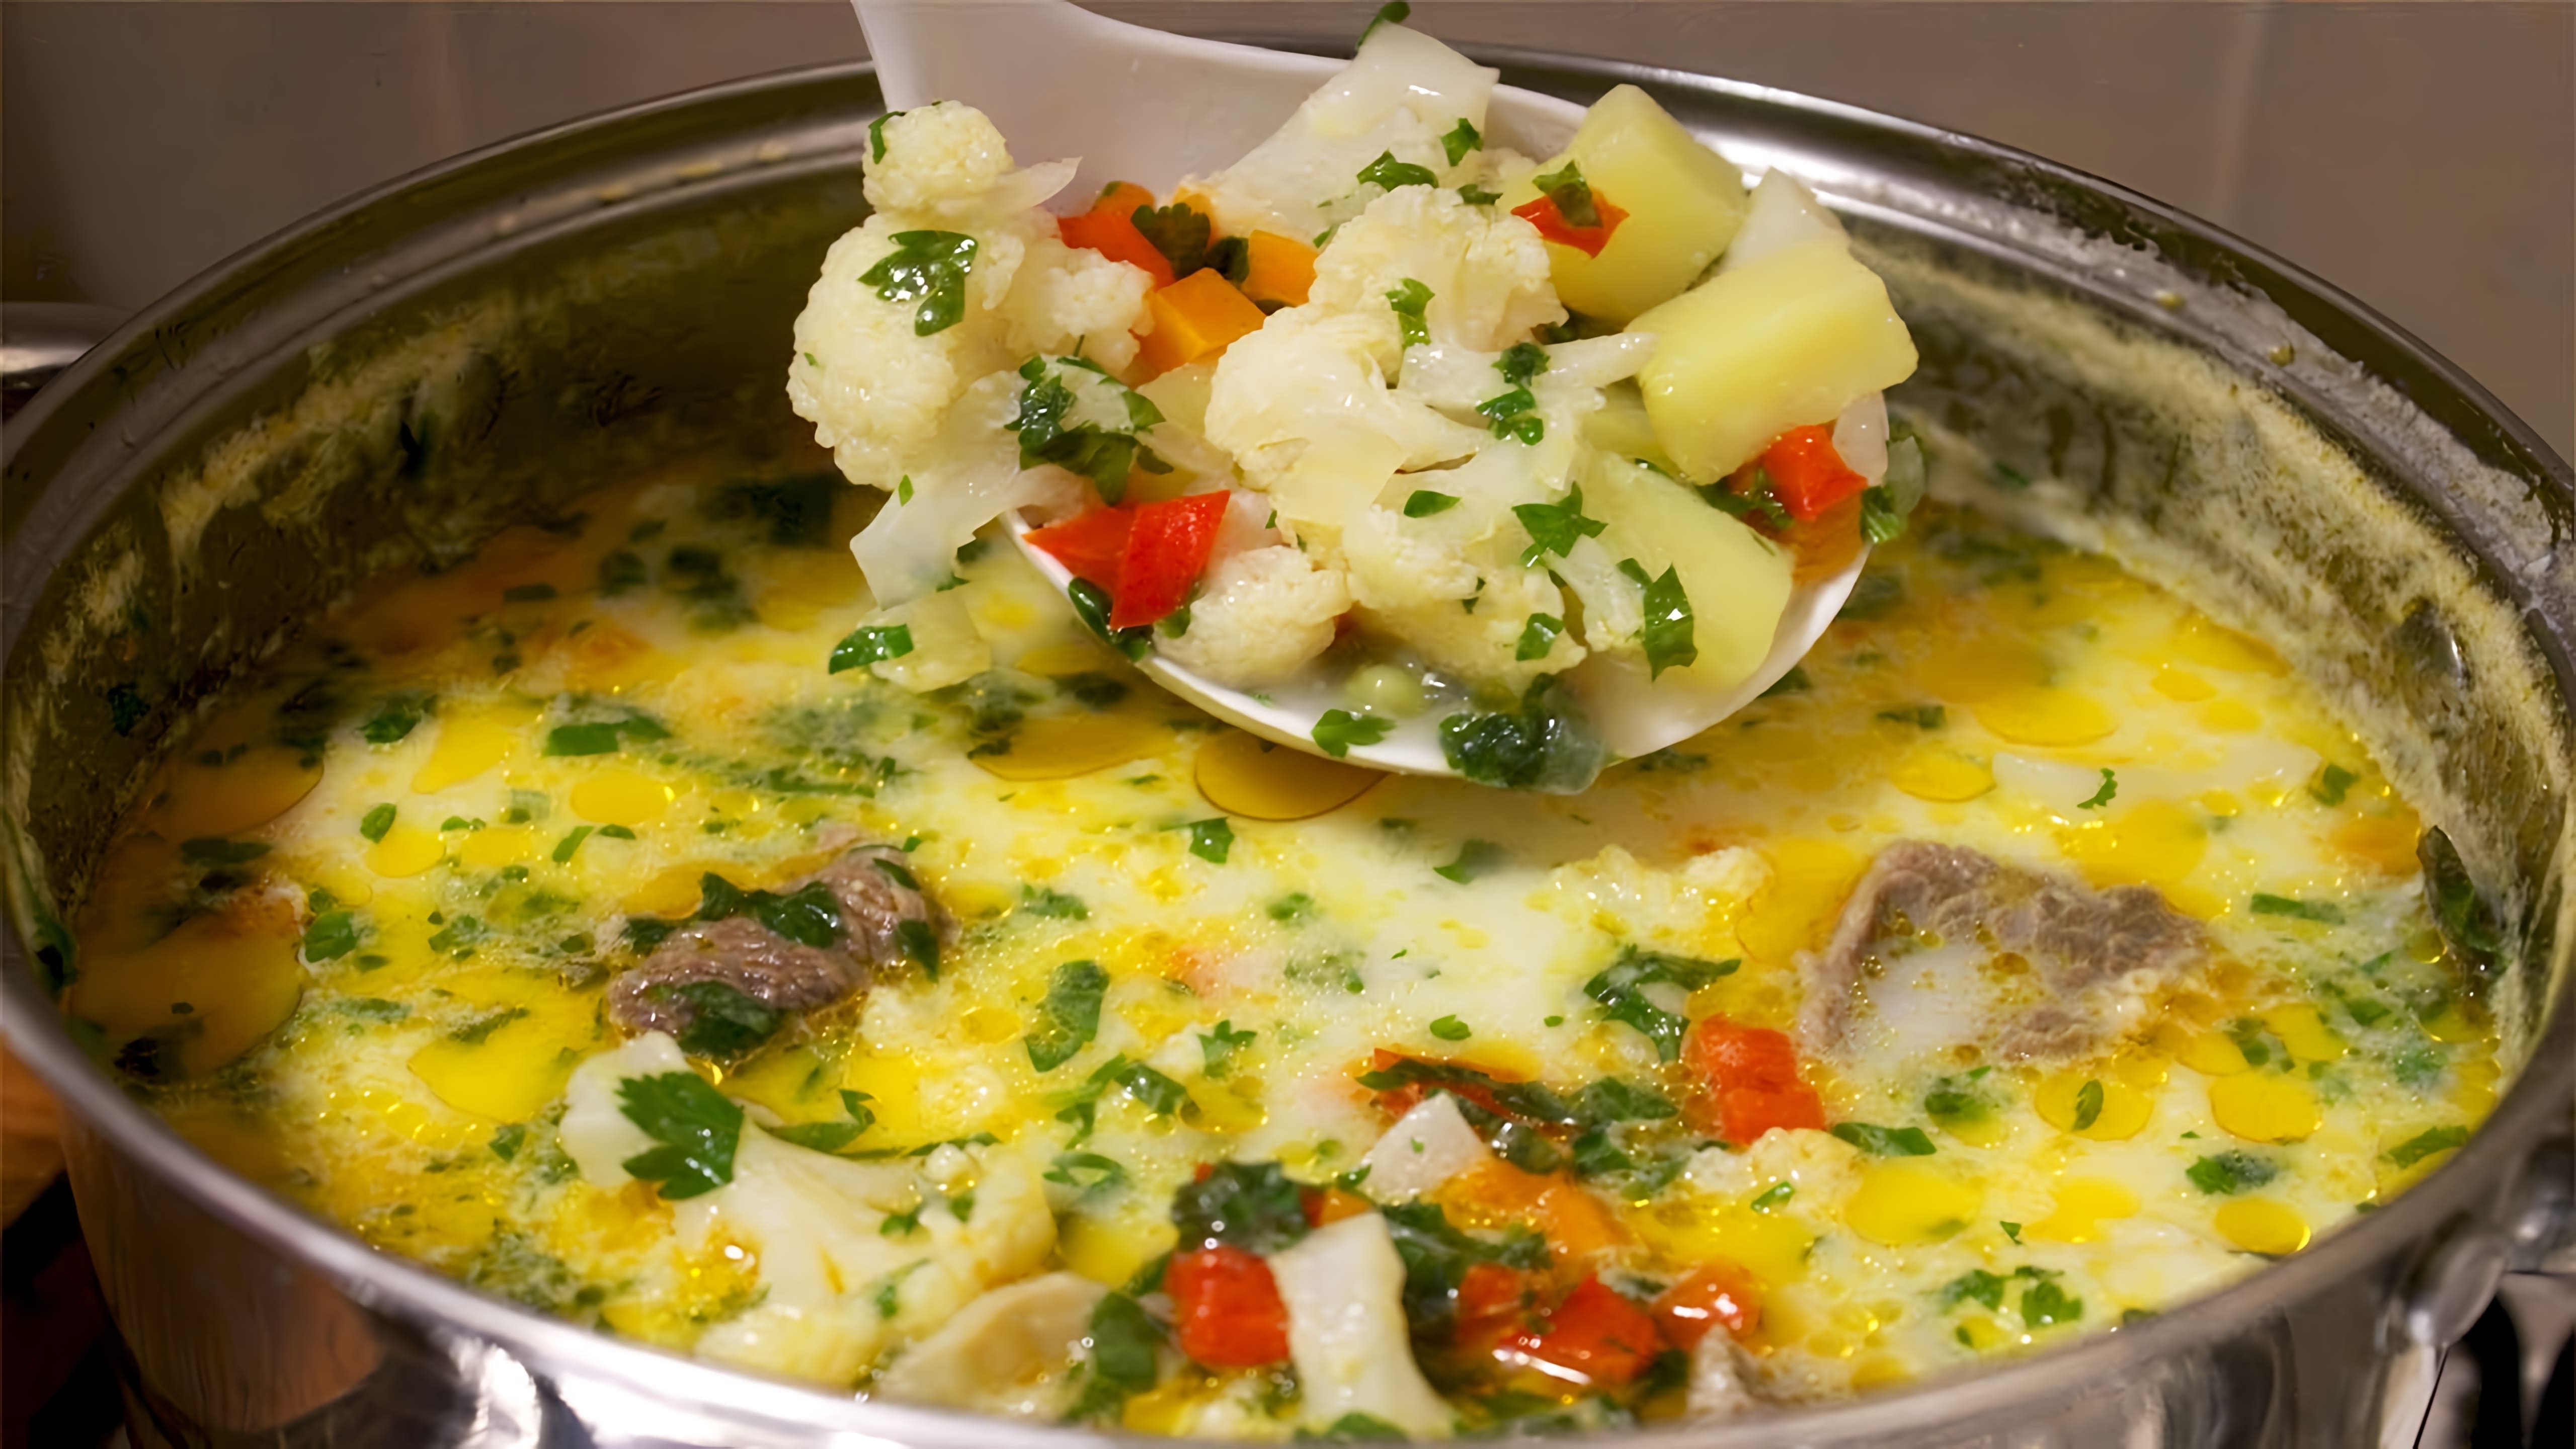 В этом видео демонстрируется процесс приготовления овощного супа с цветной капустой, мясом и плавленым сыром